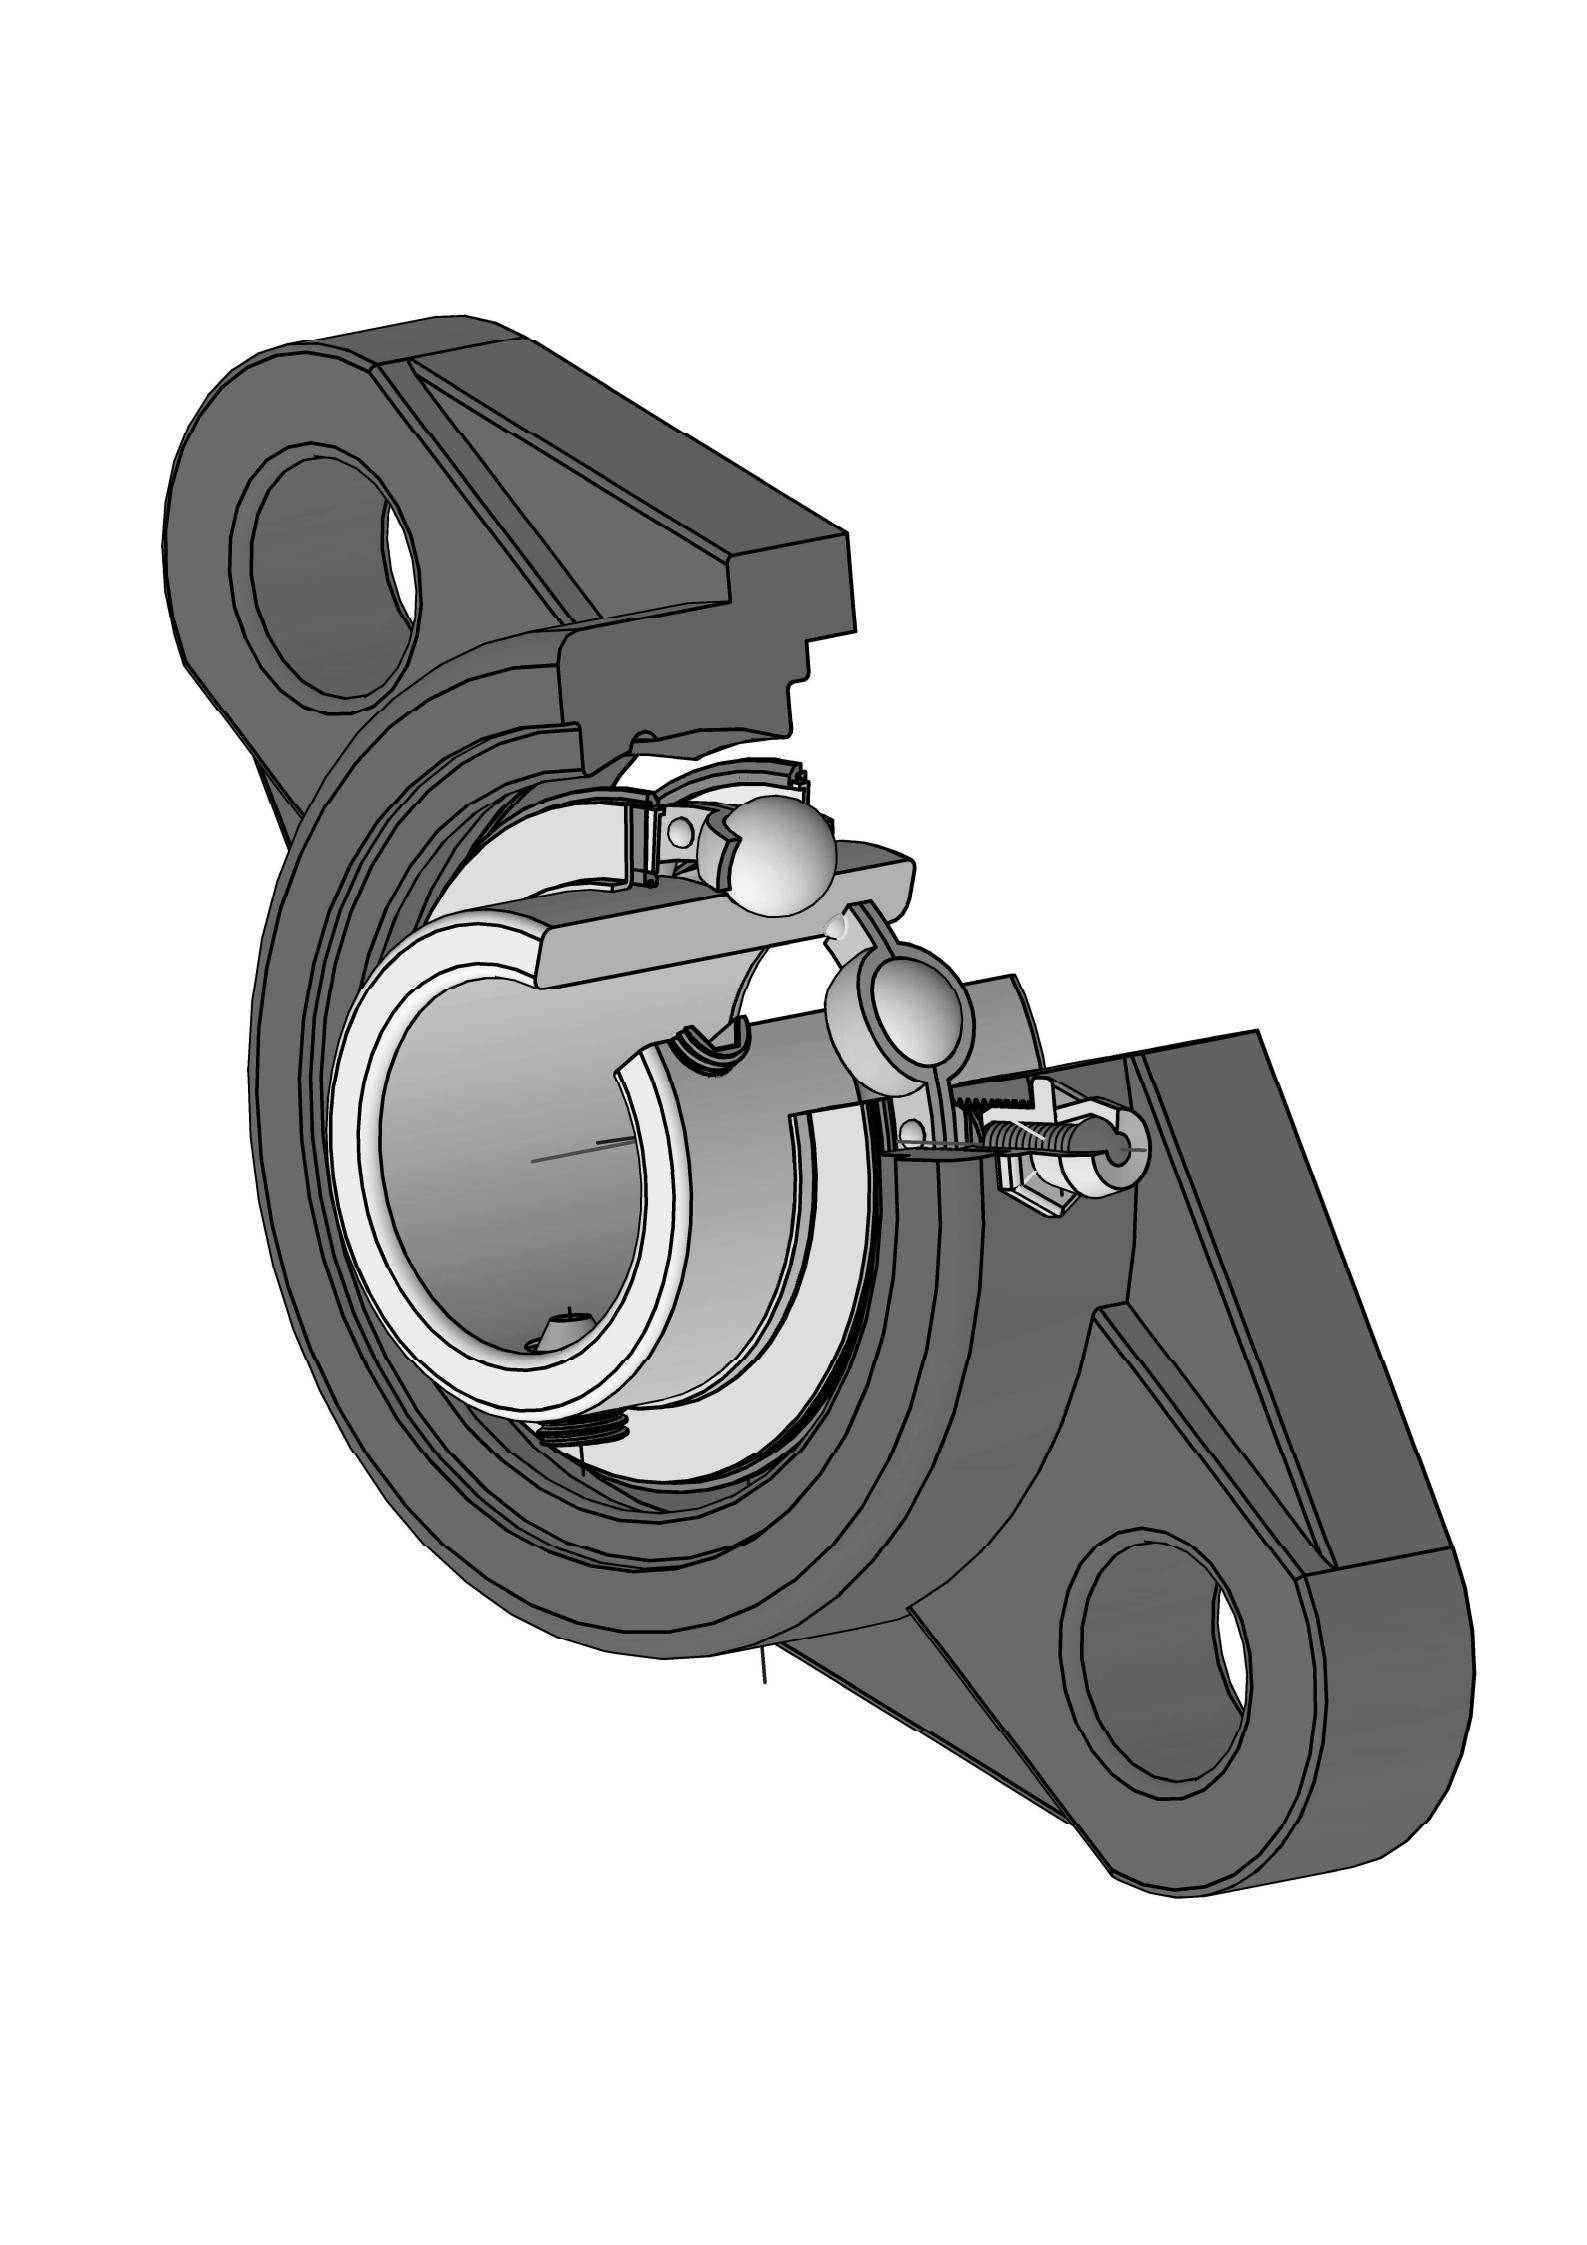 UCFLX06-17 Duha ka Bolt Oval Flange bearing Units nga adunay 1-1 / 16 pulgada nga bore